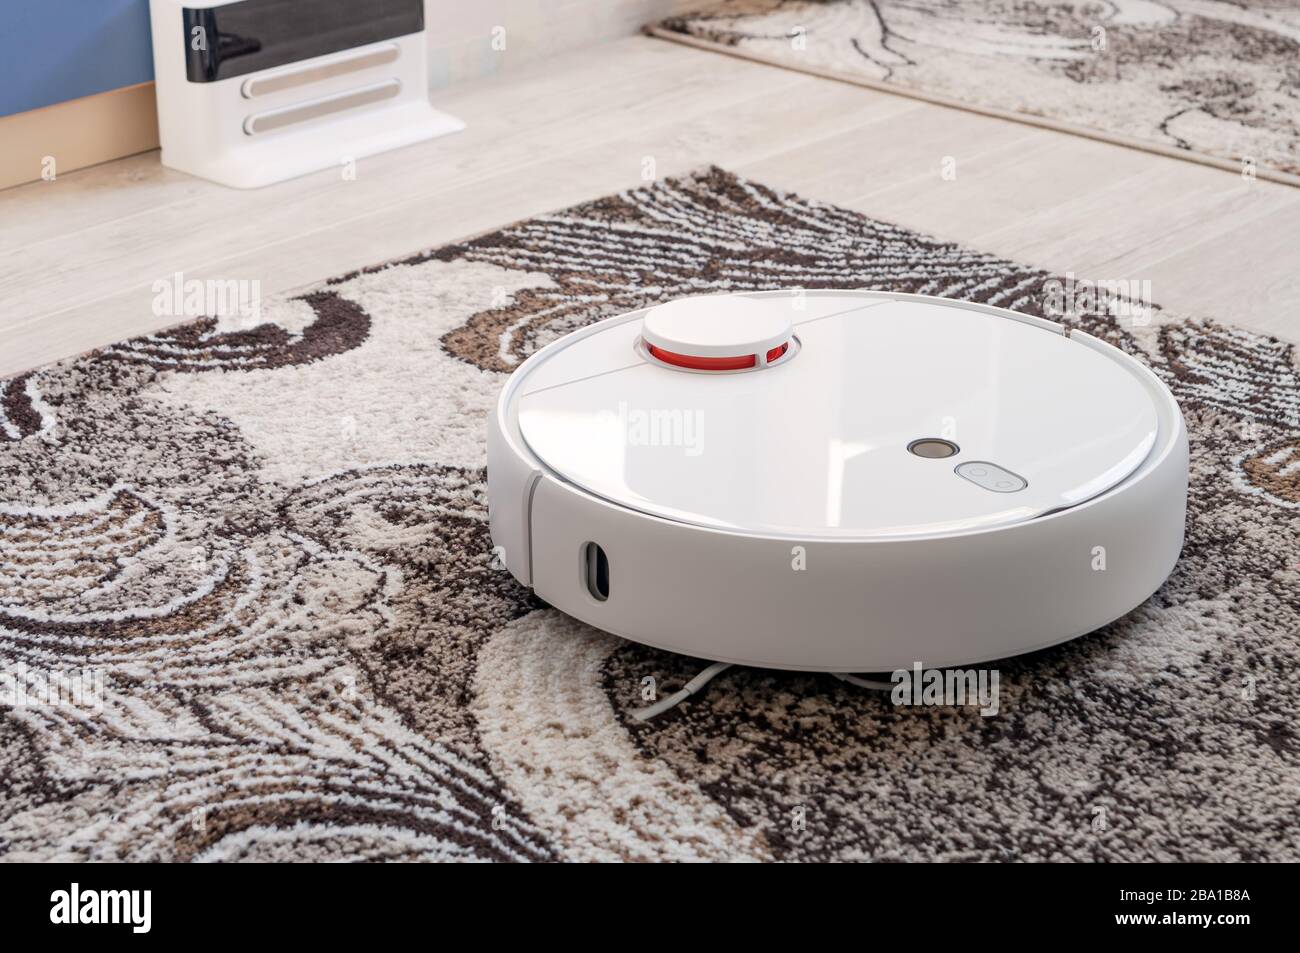 Aspirapolvere robotico rotondo bianco sul pavimento in moquette Foto Stock